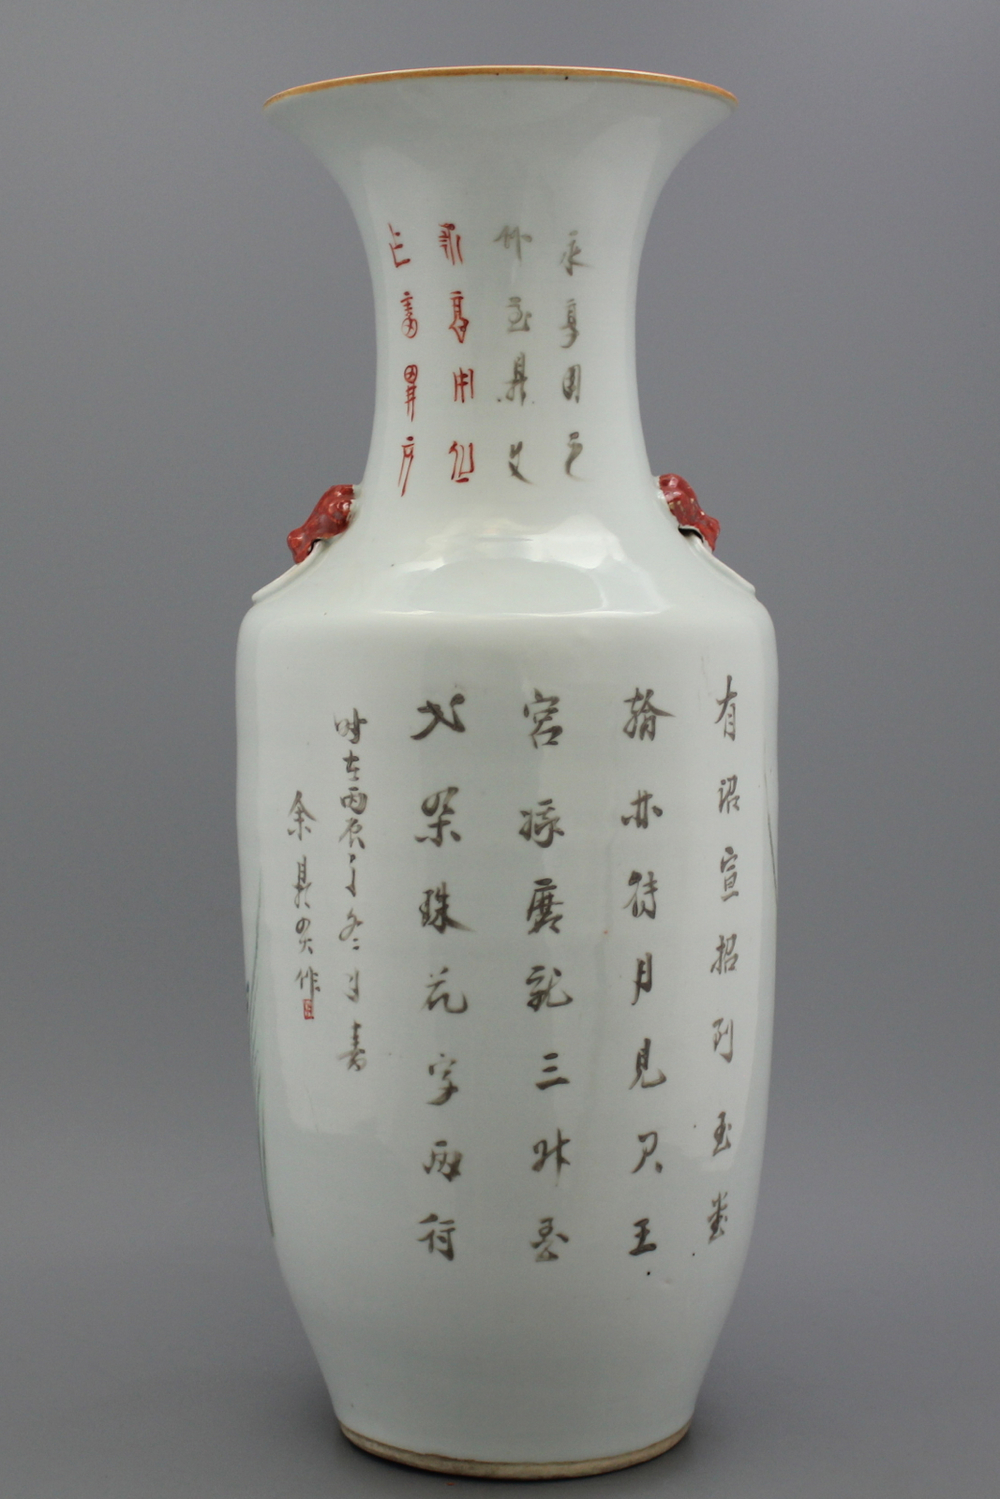 Mooie vaas in Chinees porselein met afbeelding dames, 19e-20e eeuw.